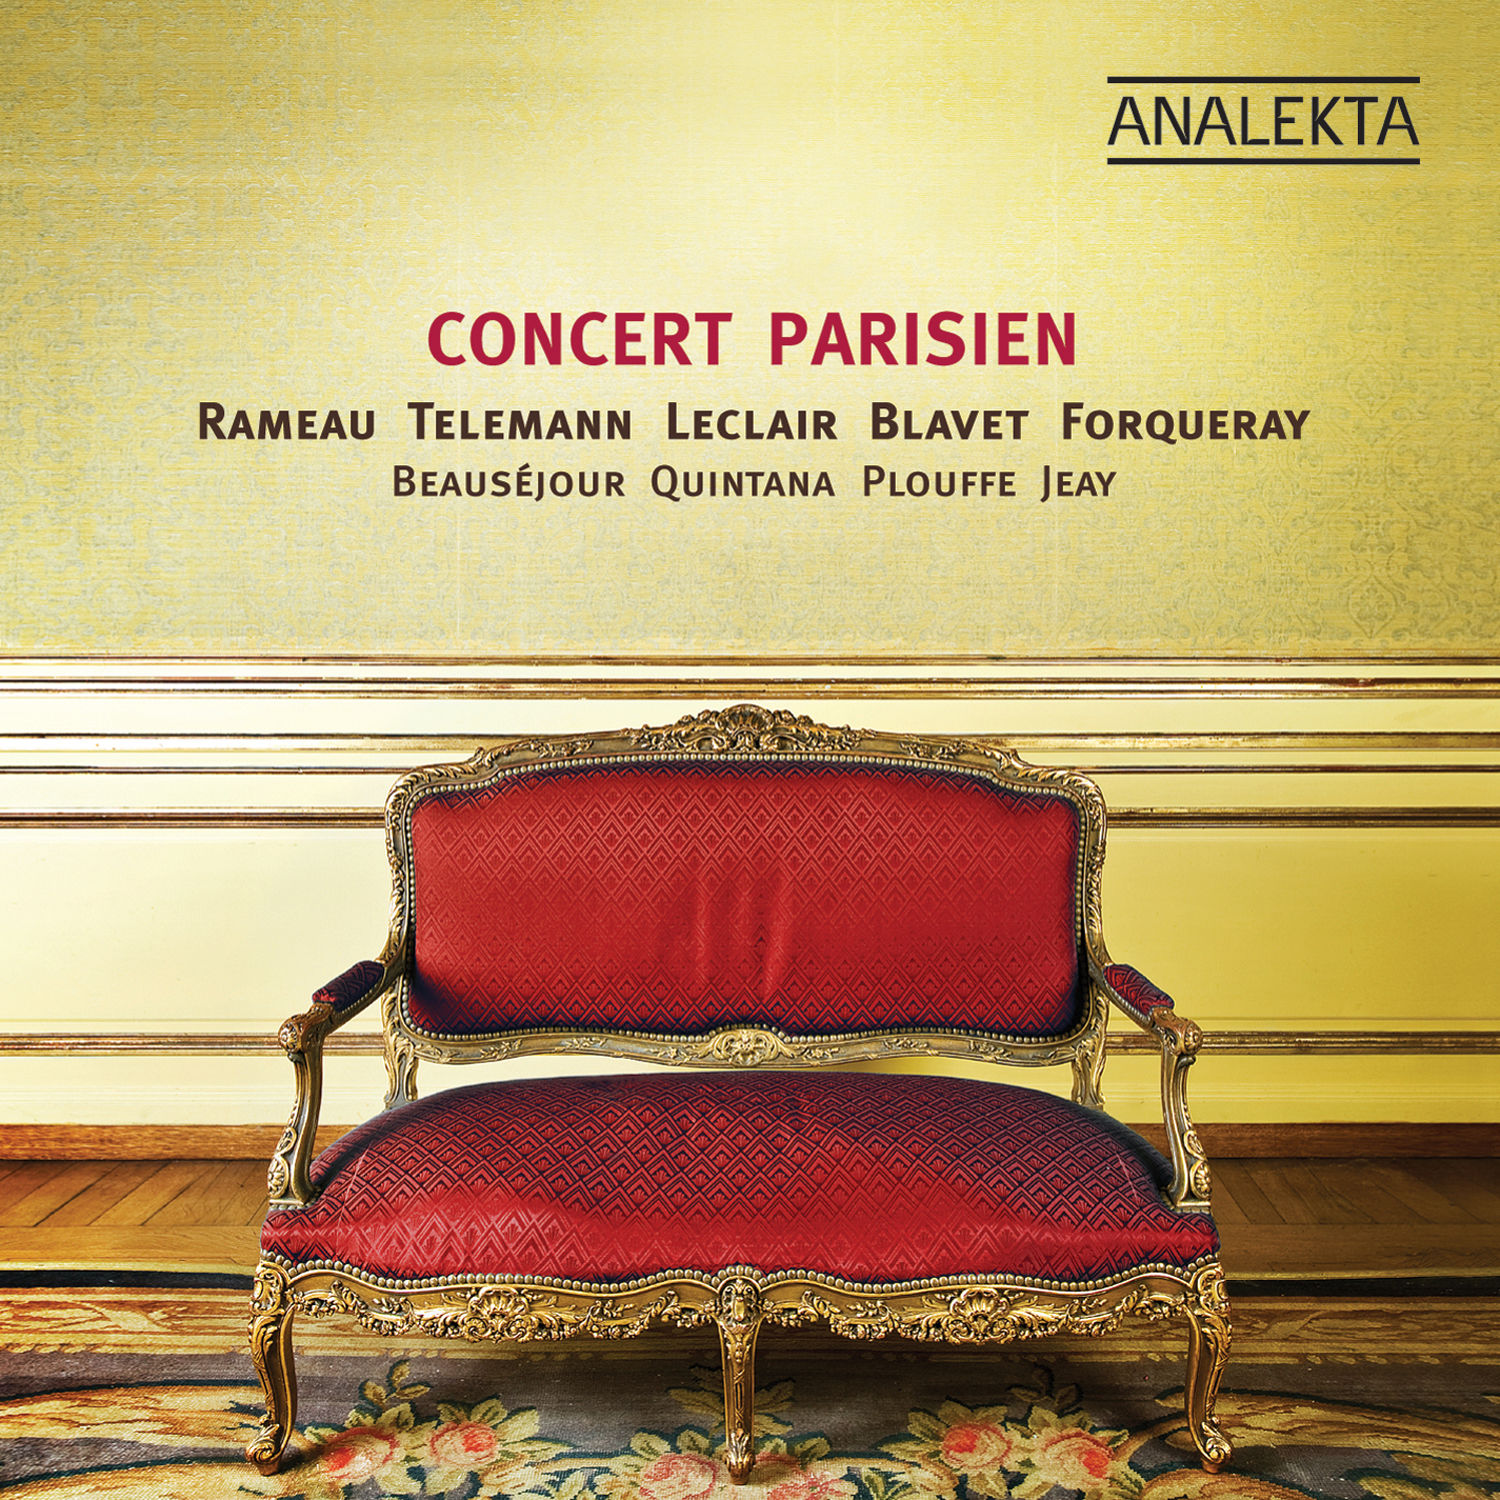 Concert Parisien – Era of Louis XV 24-88.2